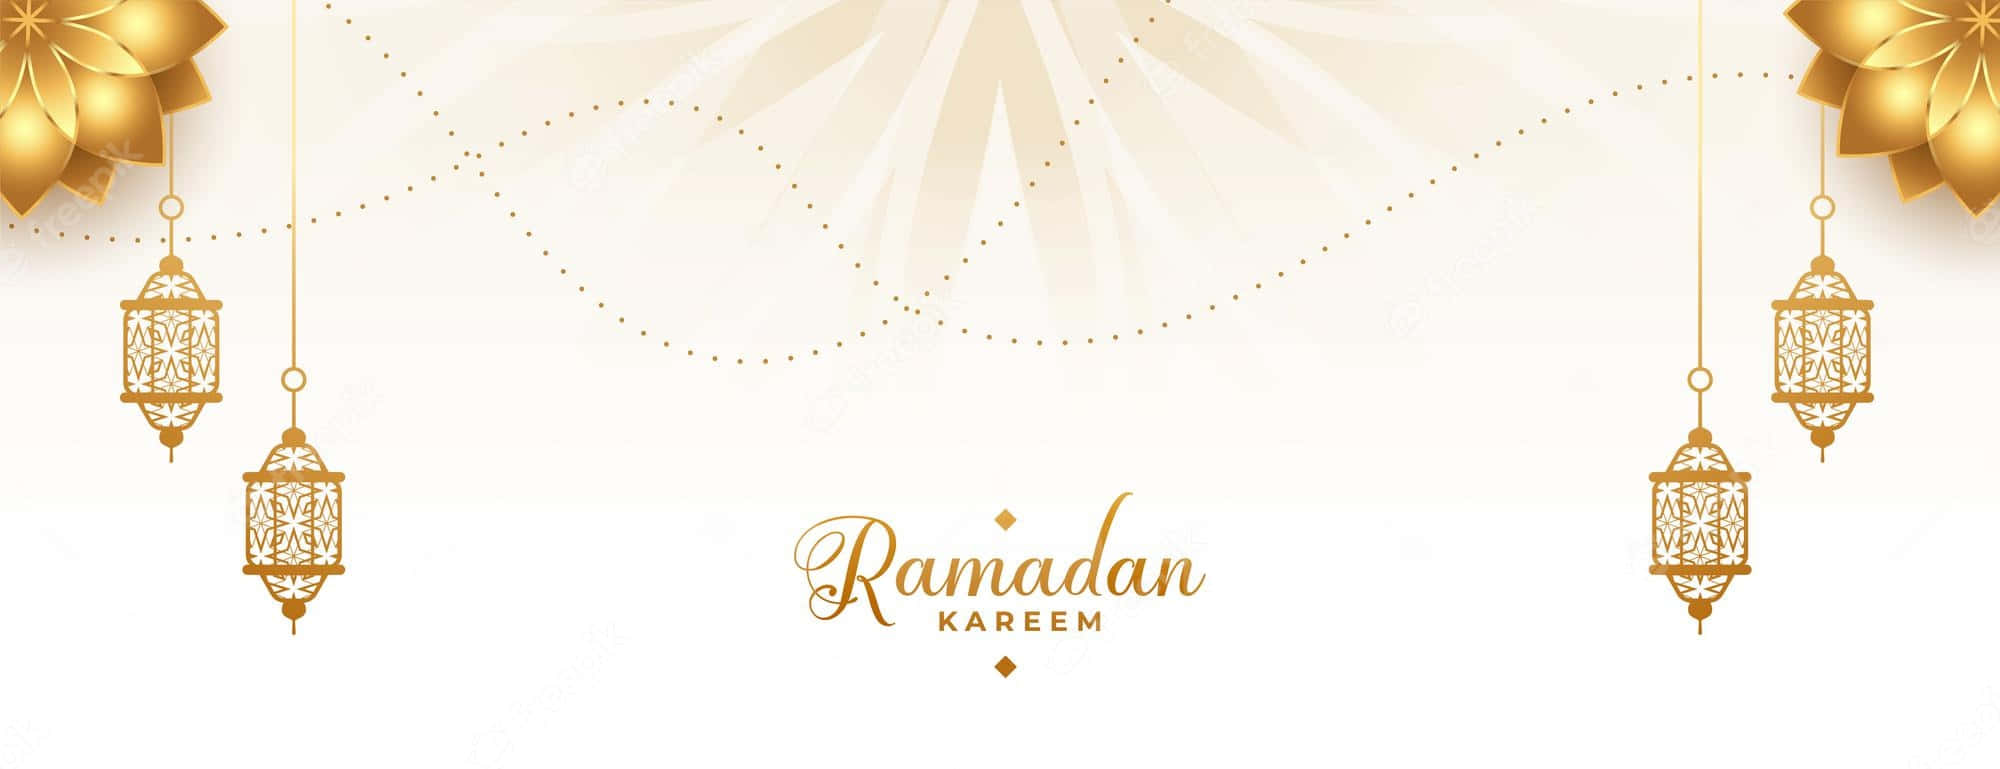 Minimalistvit Ramadan-bild